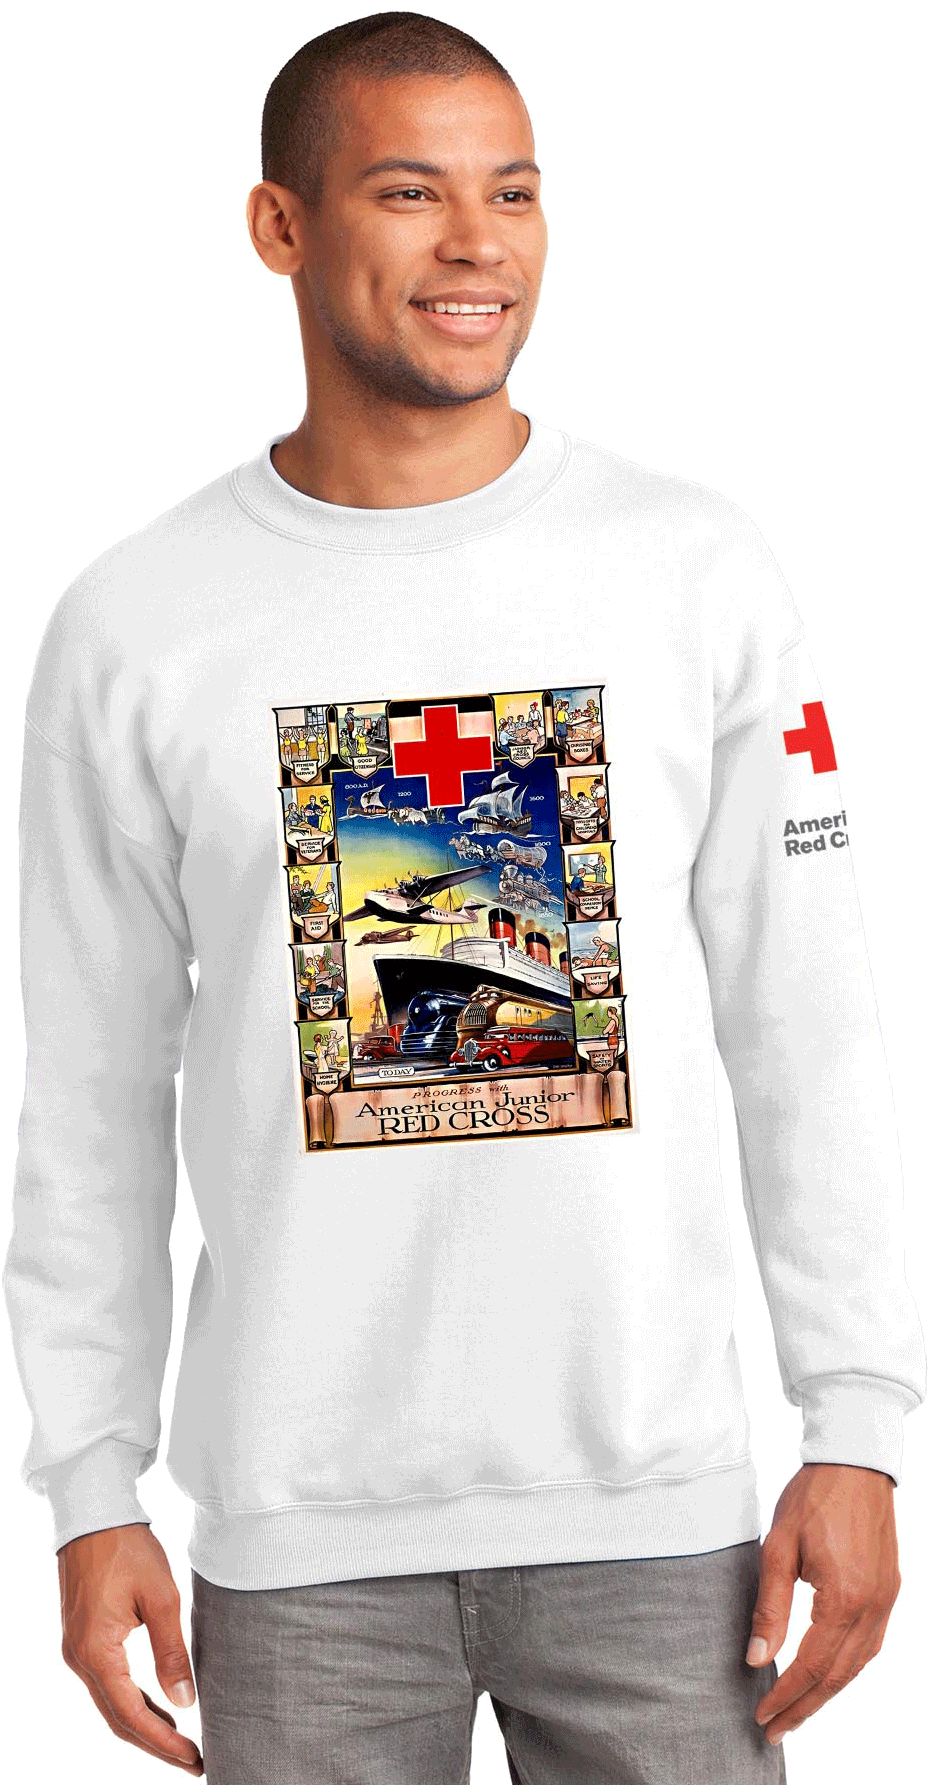 Unisex Crew Neck With American Junior Red Cross Boat - Rolex Crewneck Sweatshirt (1800x1800), Png Download